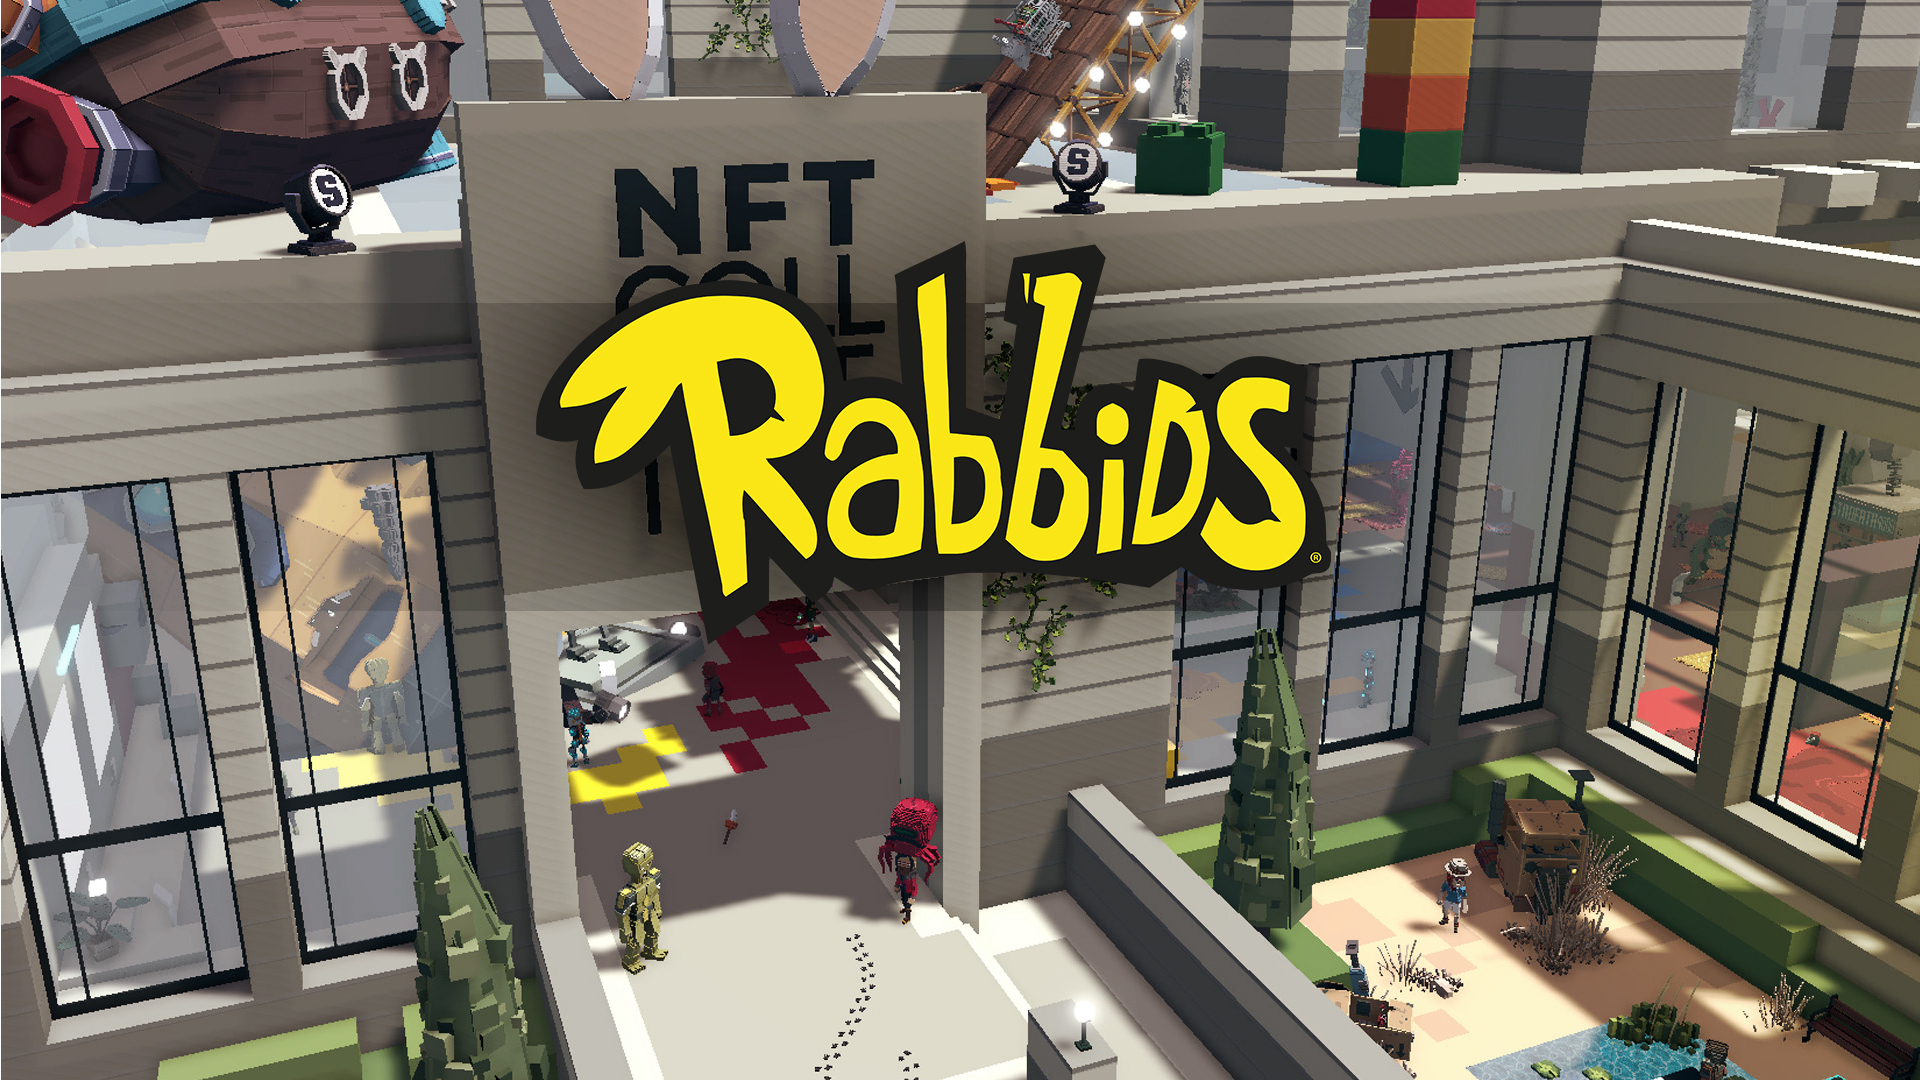 Reddit Partnerstvo z Ubisoftom za ponudbo brezplačnih Rabbid NFT